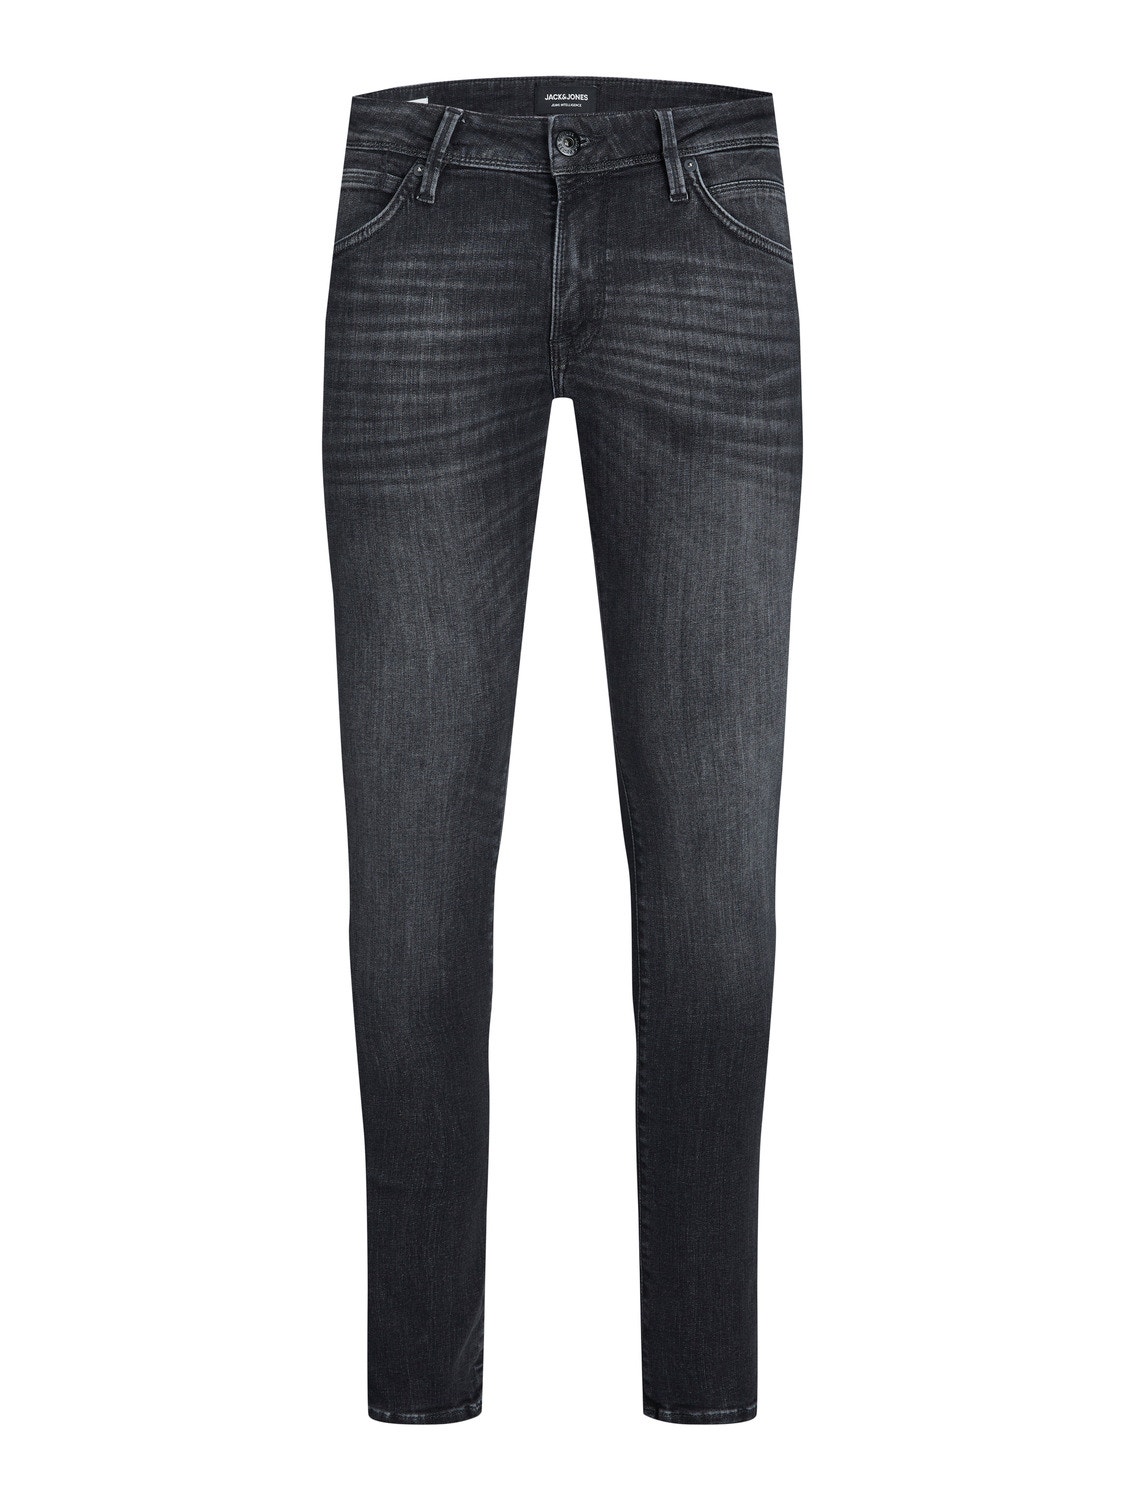 JJILIAM JJFOX BL 655 50SPS Skinny fit jeans with 50% discount! | Jack ...